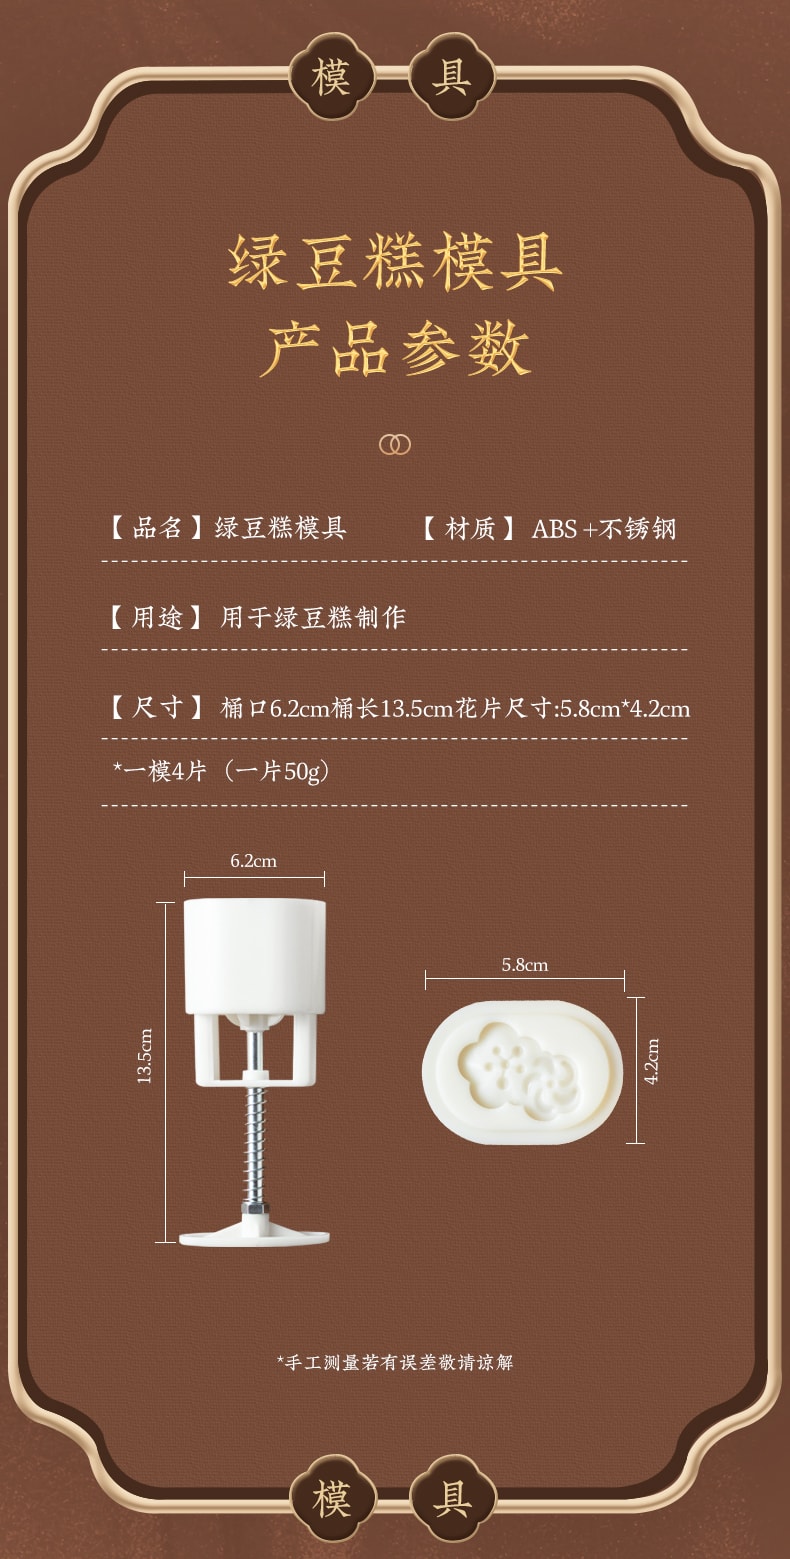 【亞米獨家】 中秋廚房月餅模具家用冰皮糕點烘焙磨俱50克 綠豆糕5片裝